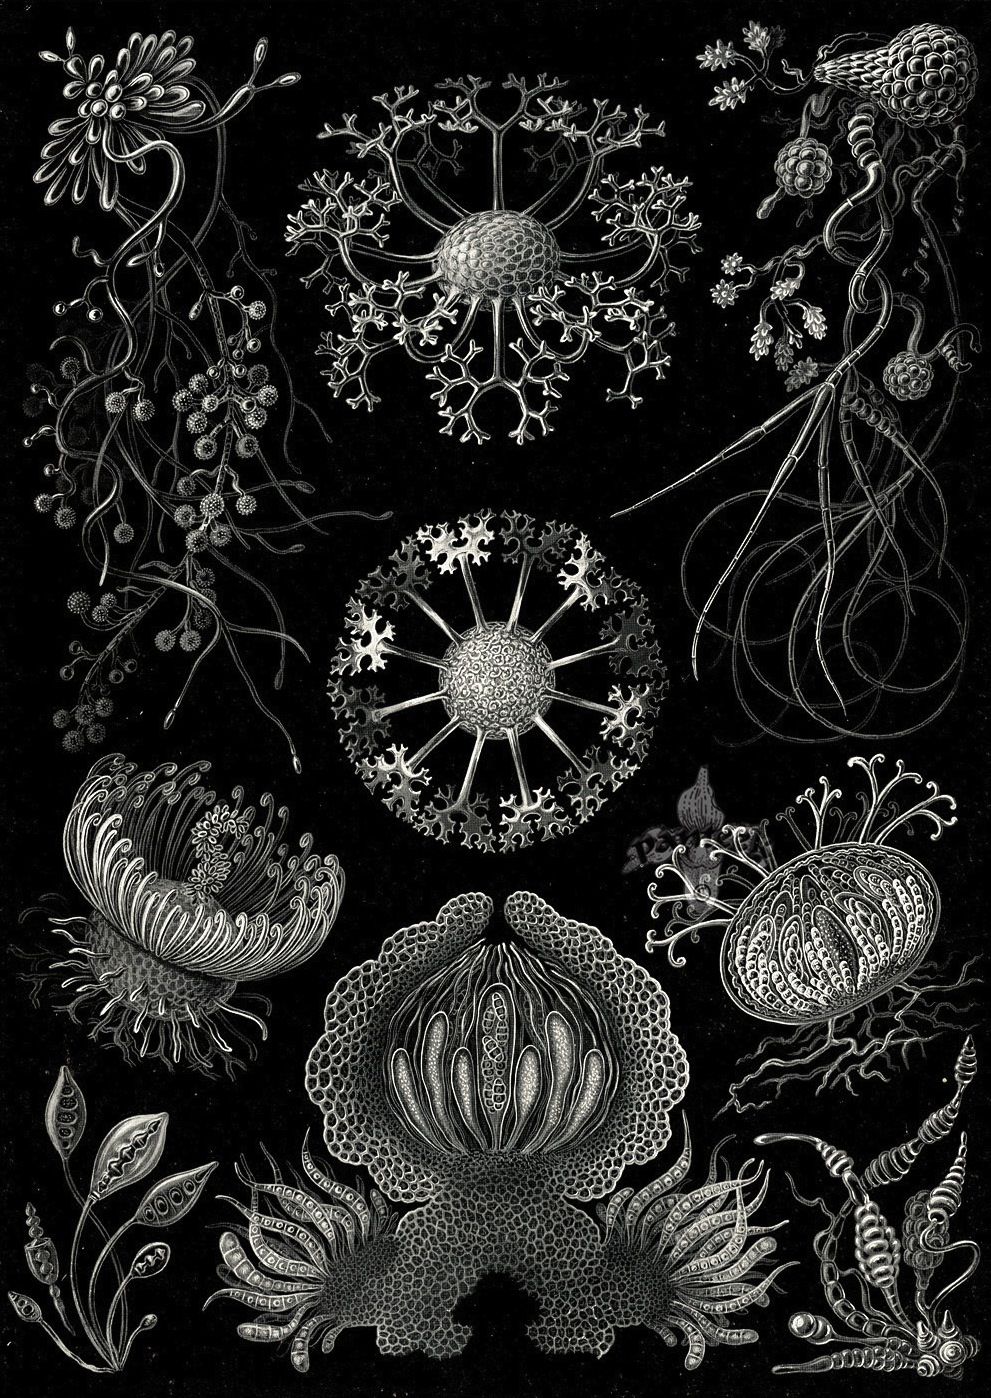 Kunstformen der Natur - Ernst Haeckel 1899-1904 (4).jpg